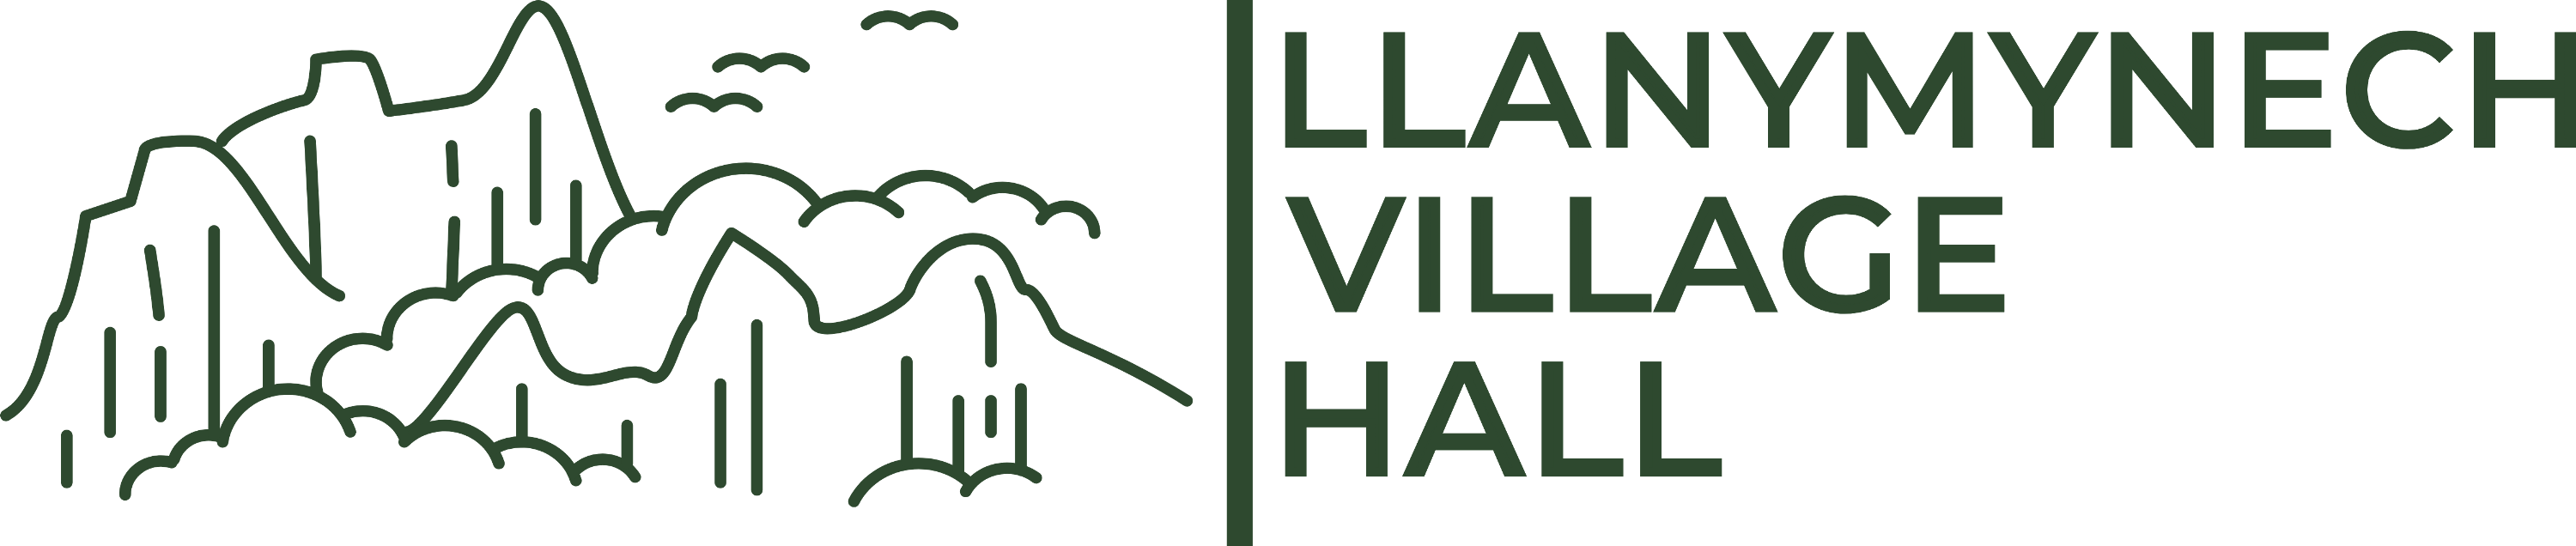 Llanymynech Village Hall Logo